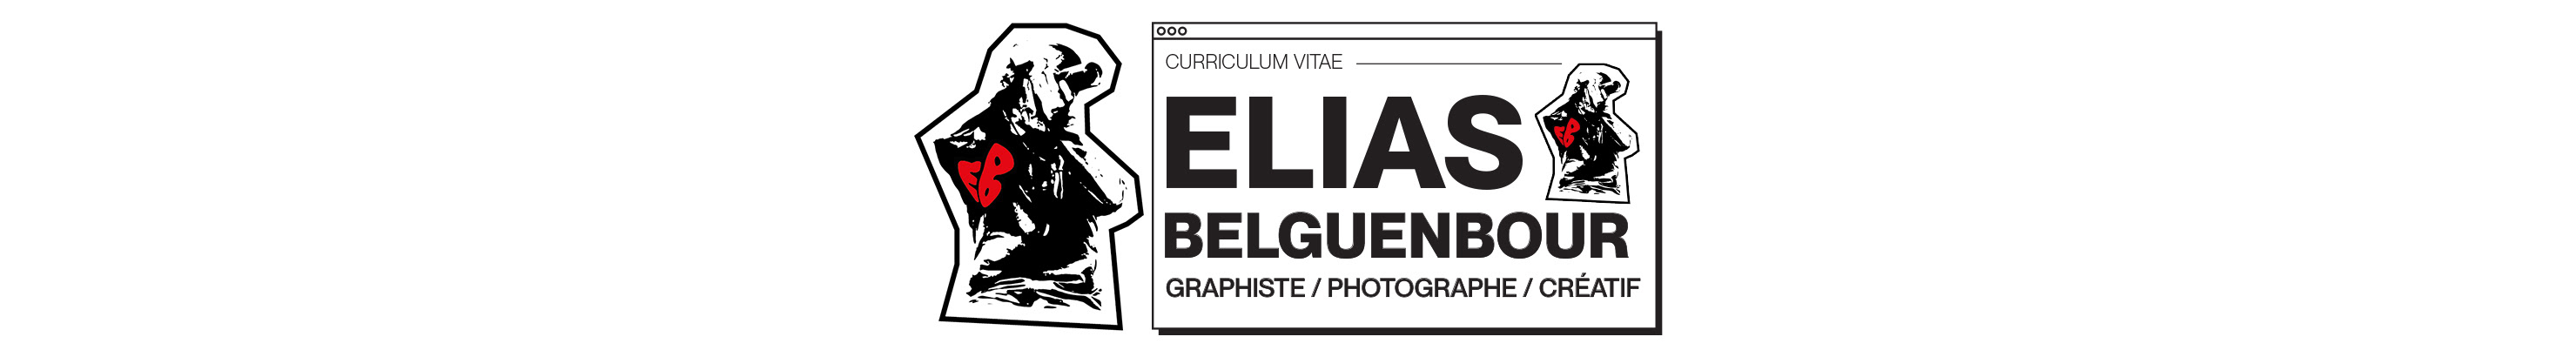 Elias Belguenbour's profile banner